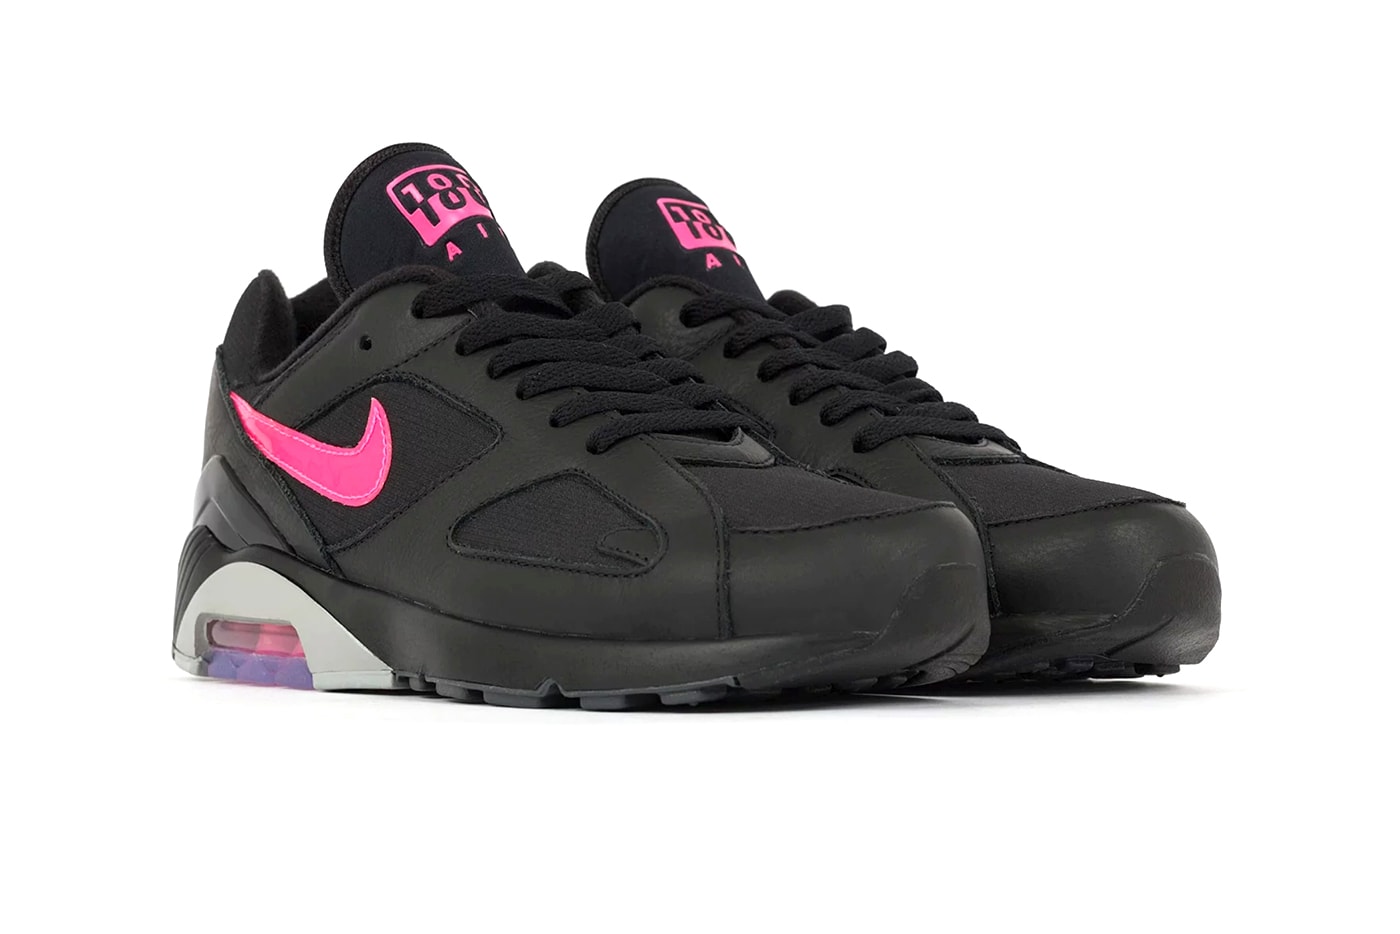 Nike Air Max 180 black wolf grey pink purple release info sneakers footwear